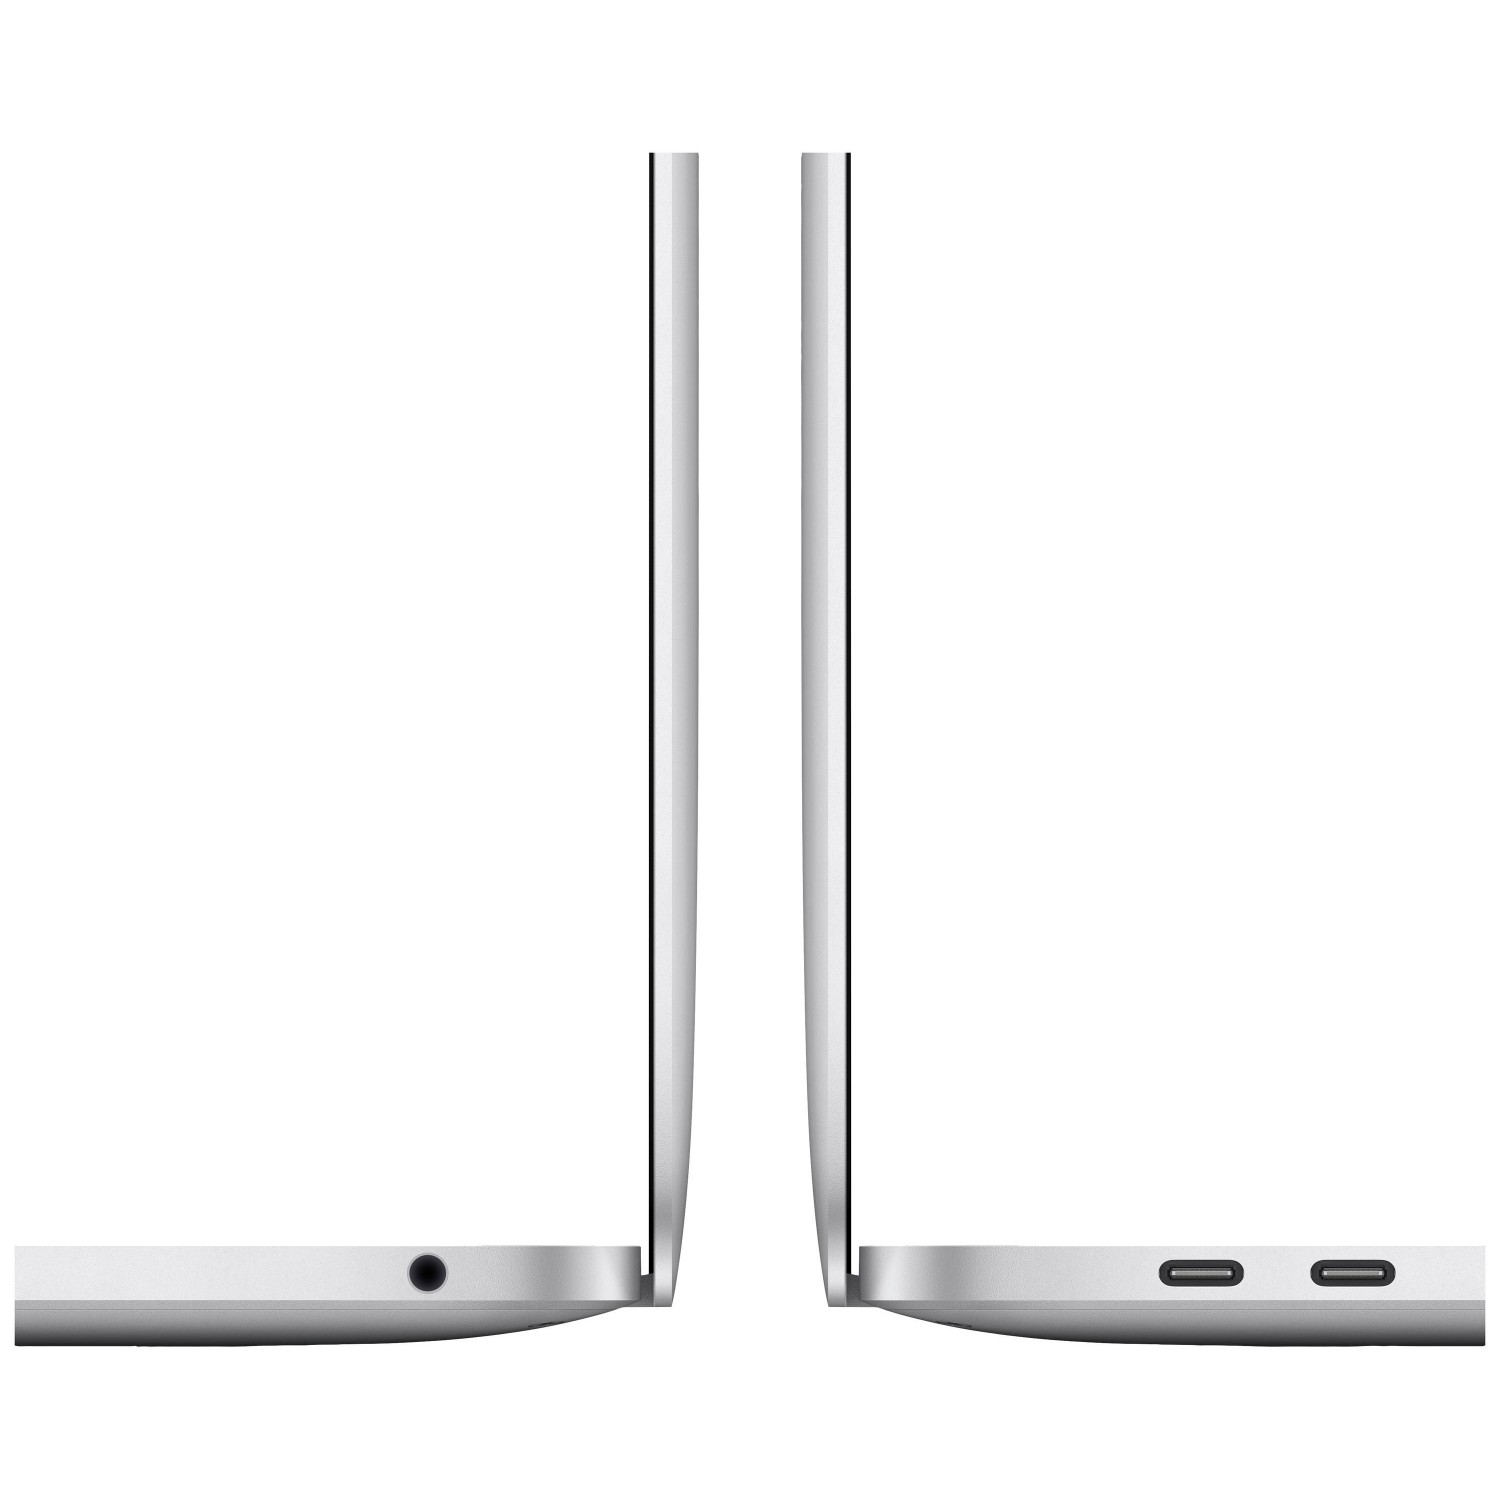 لپ تاپ Apple MacBook Pro 13 2020 CTO - Silver - F-3